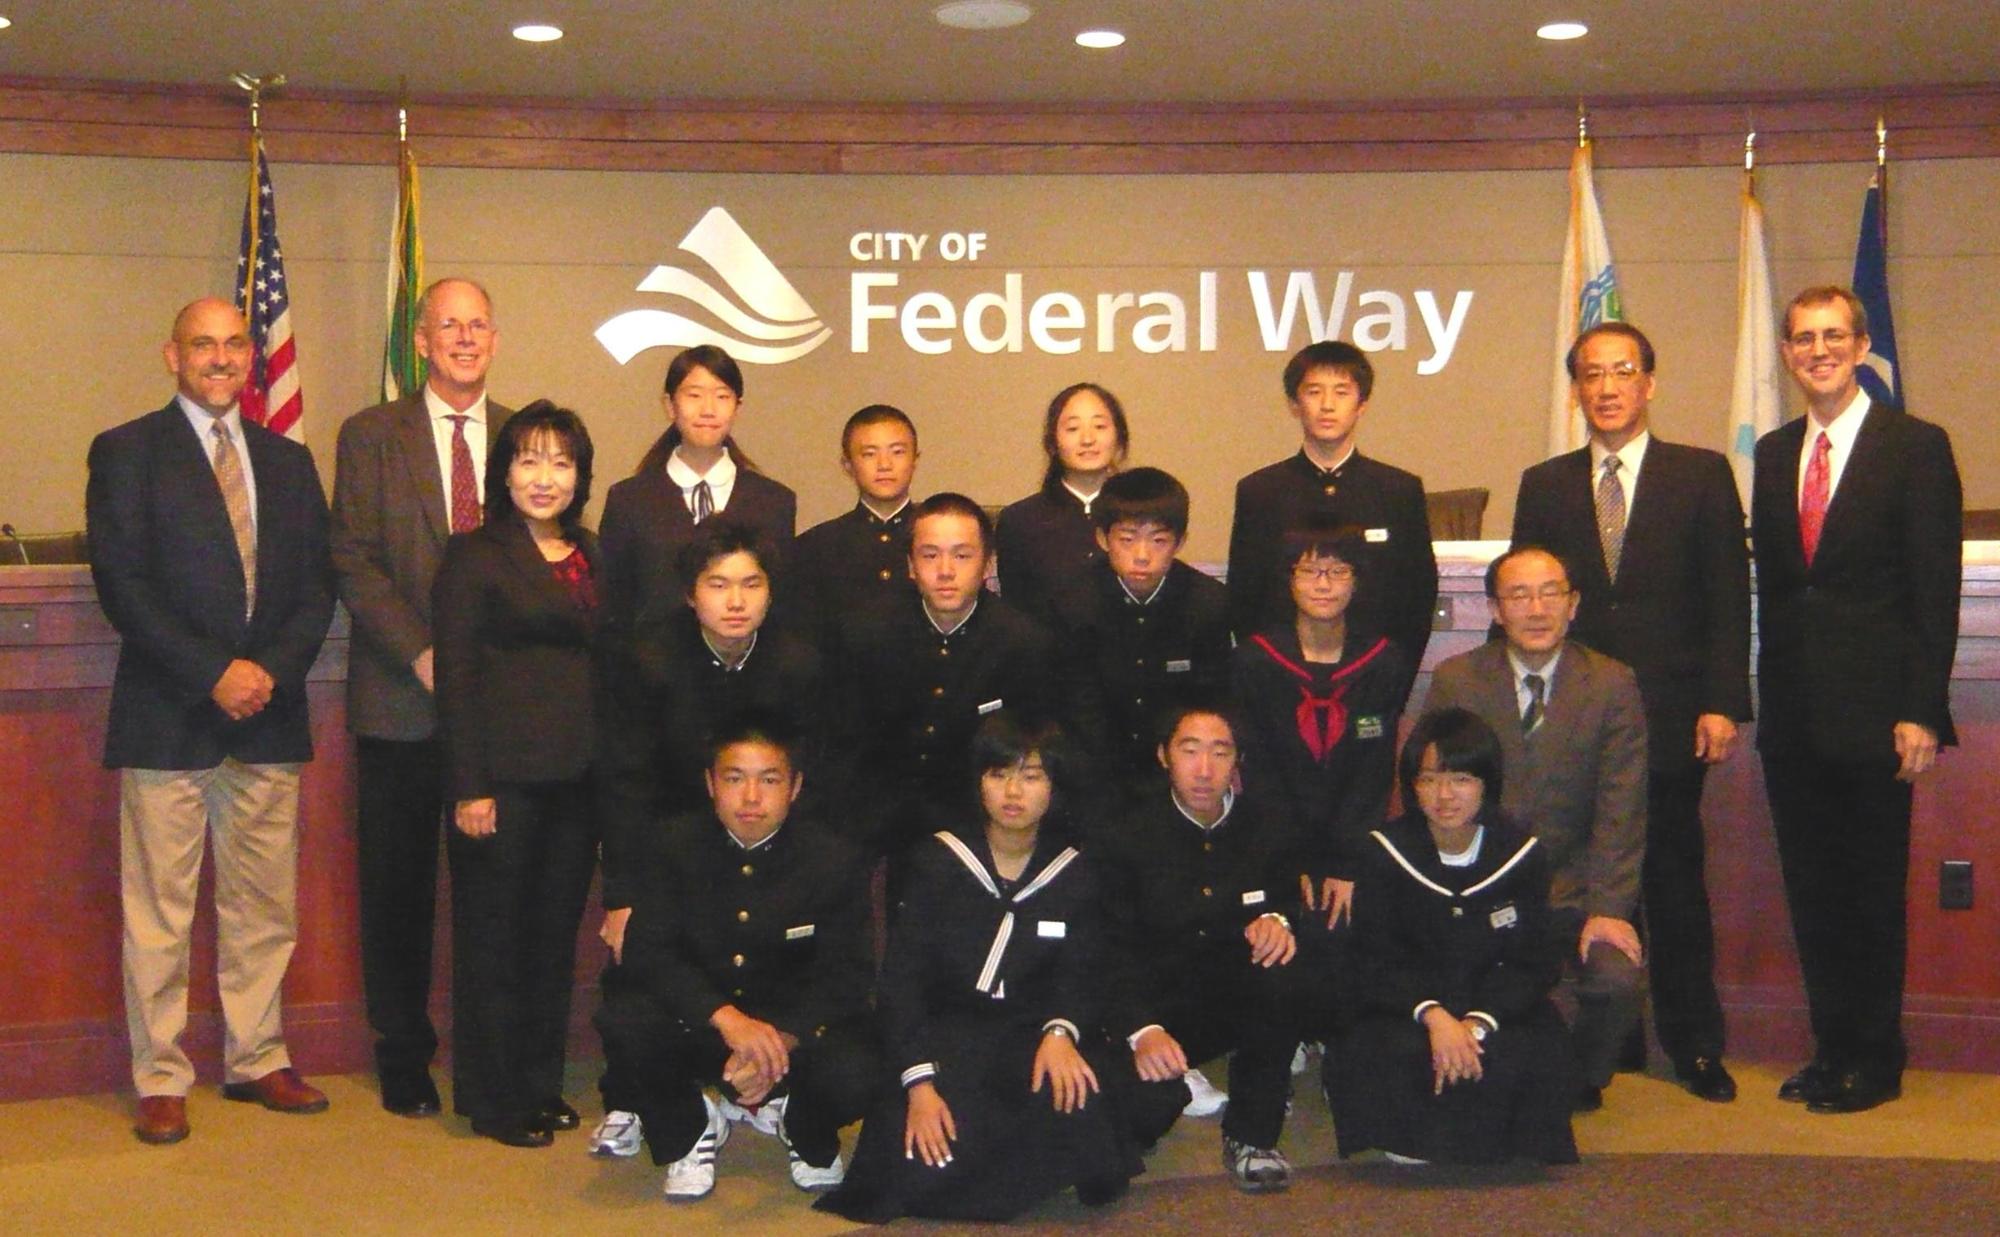 Federalwayと書かれた壁の前で中央に制服を着た生徒たち、両端に外国人たちが立って記念撮影をしている写真